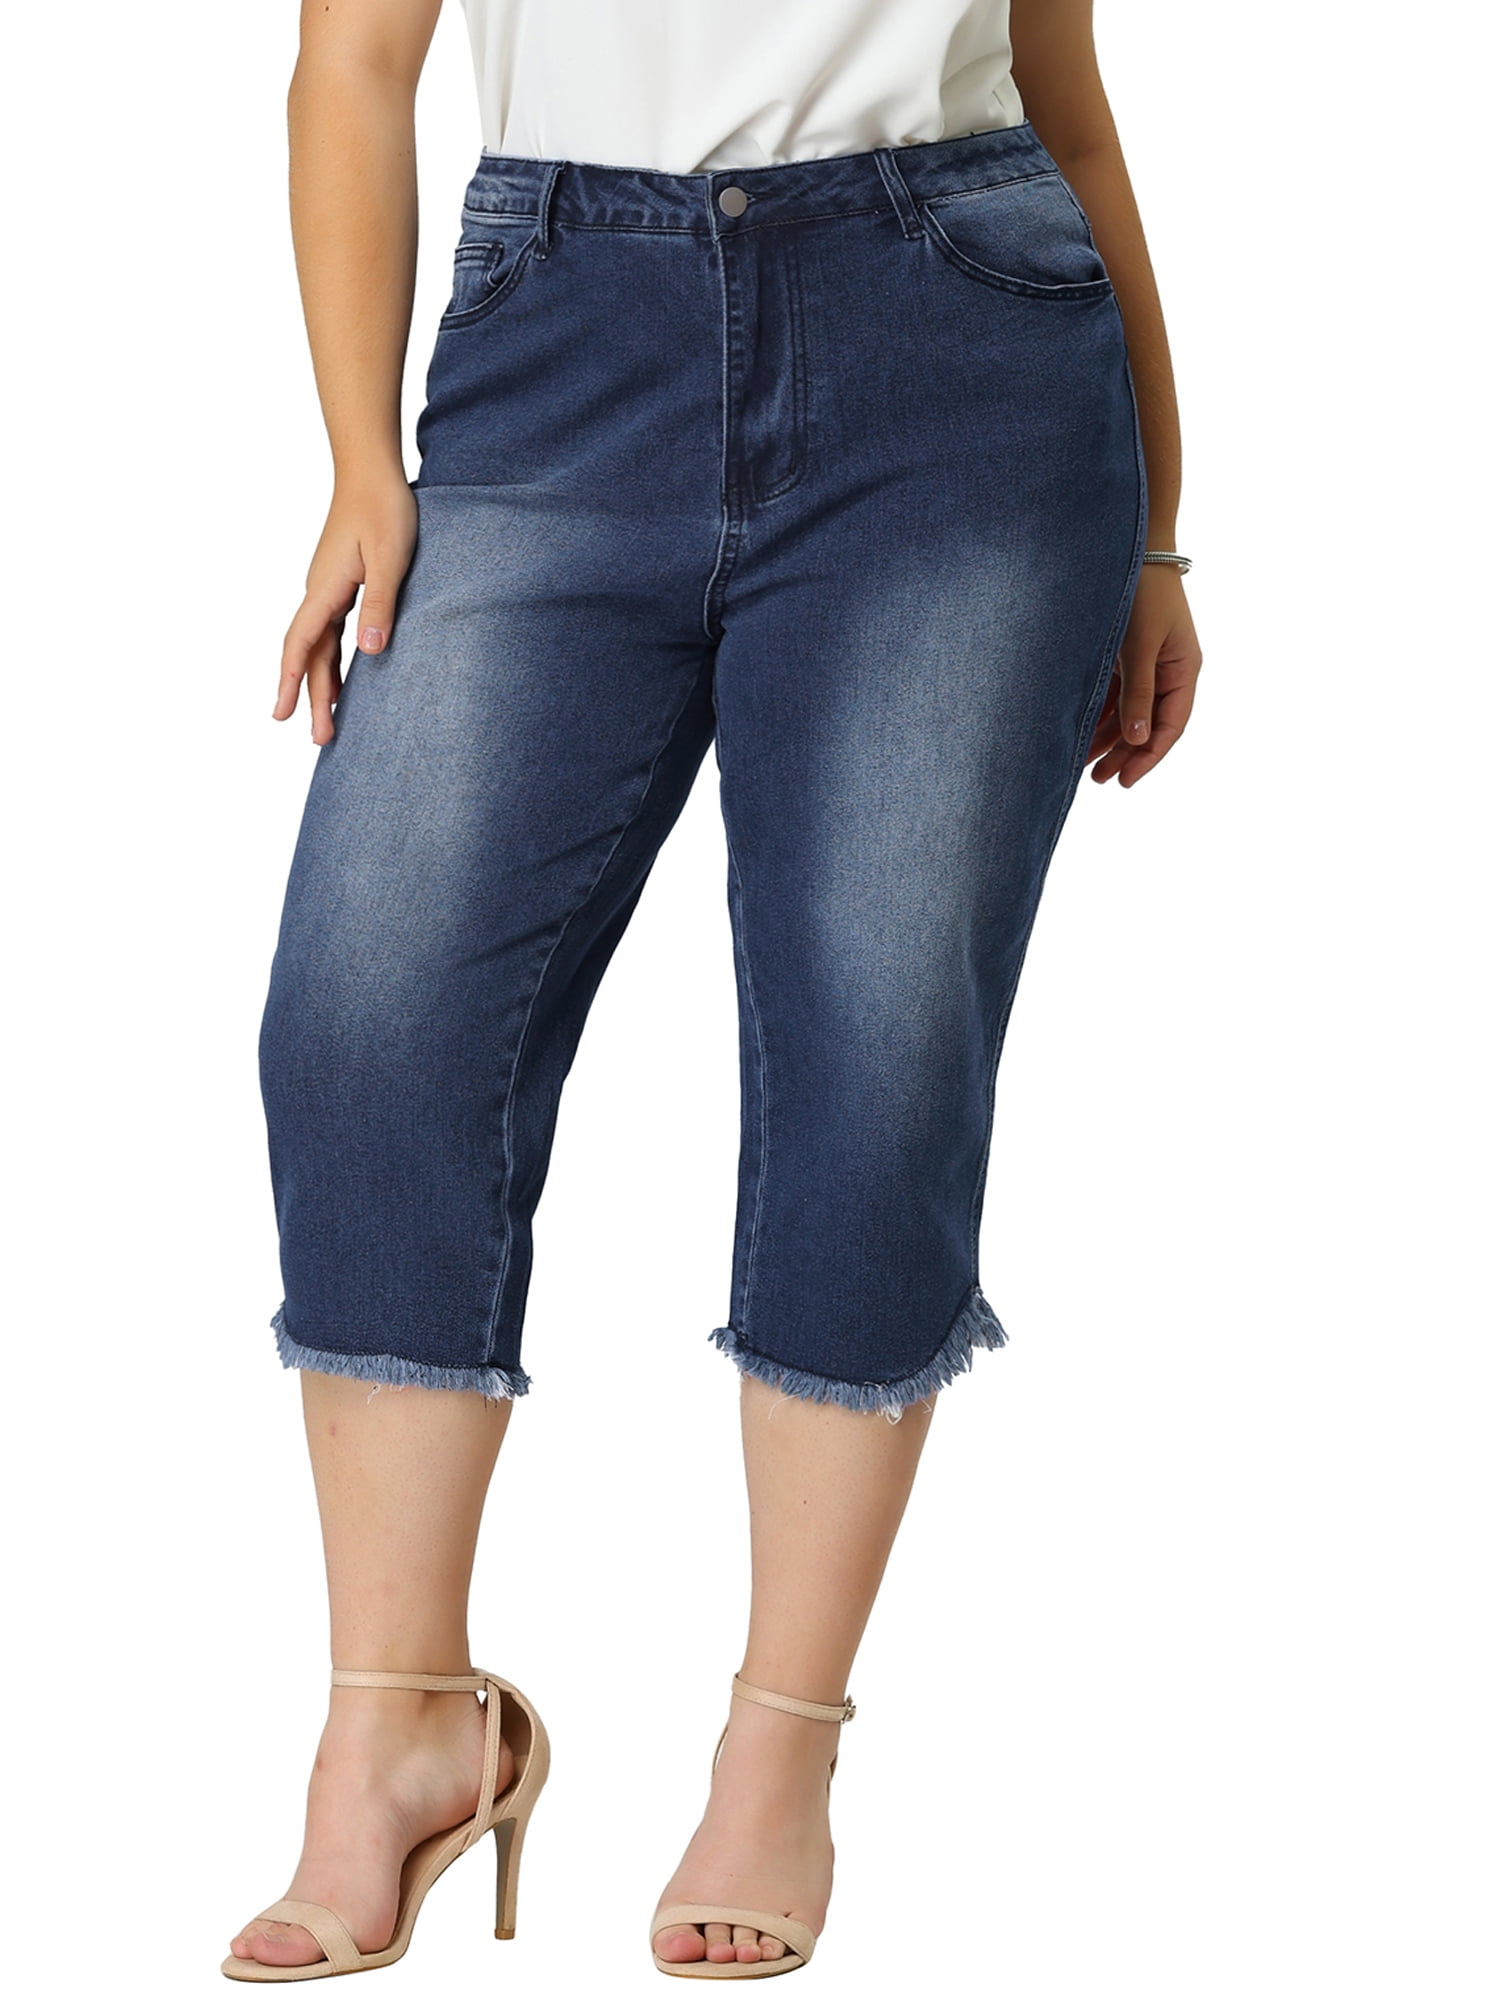 Unique Bargains Women's Plus Capri Frayed Hem Casual Denim Jeans